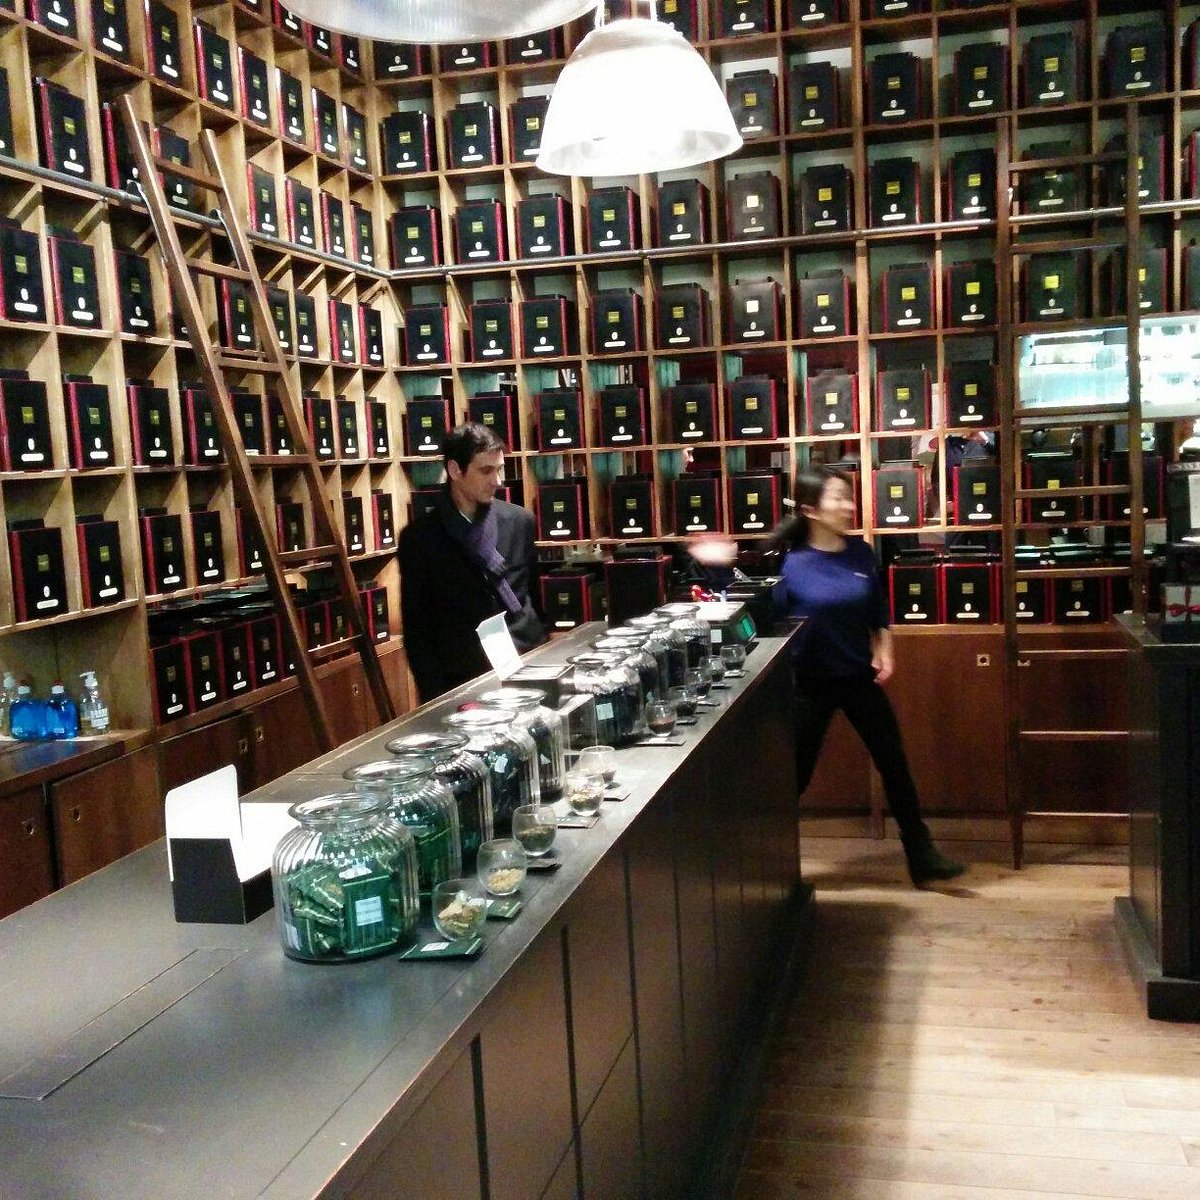 Mariage Frères Tea Shop Paris - The Taste Edit